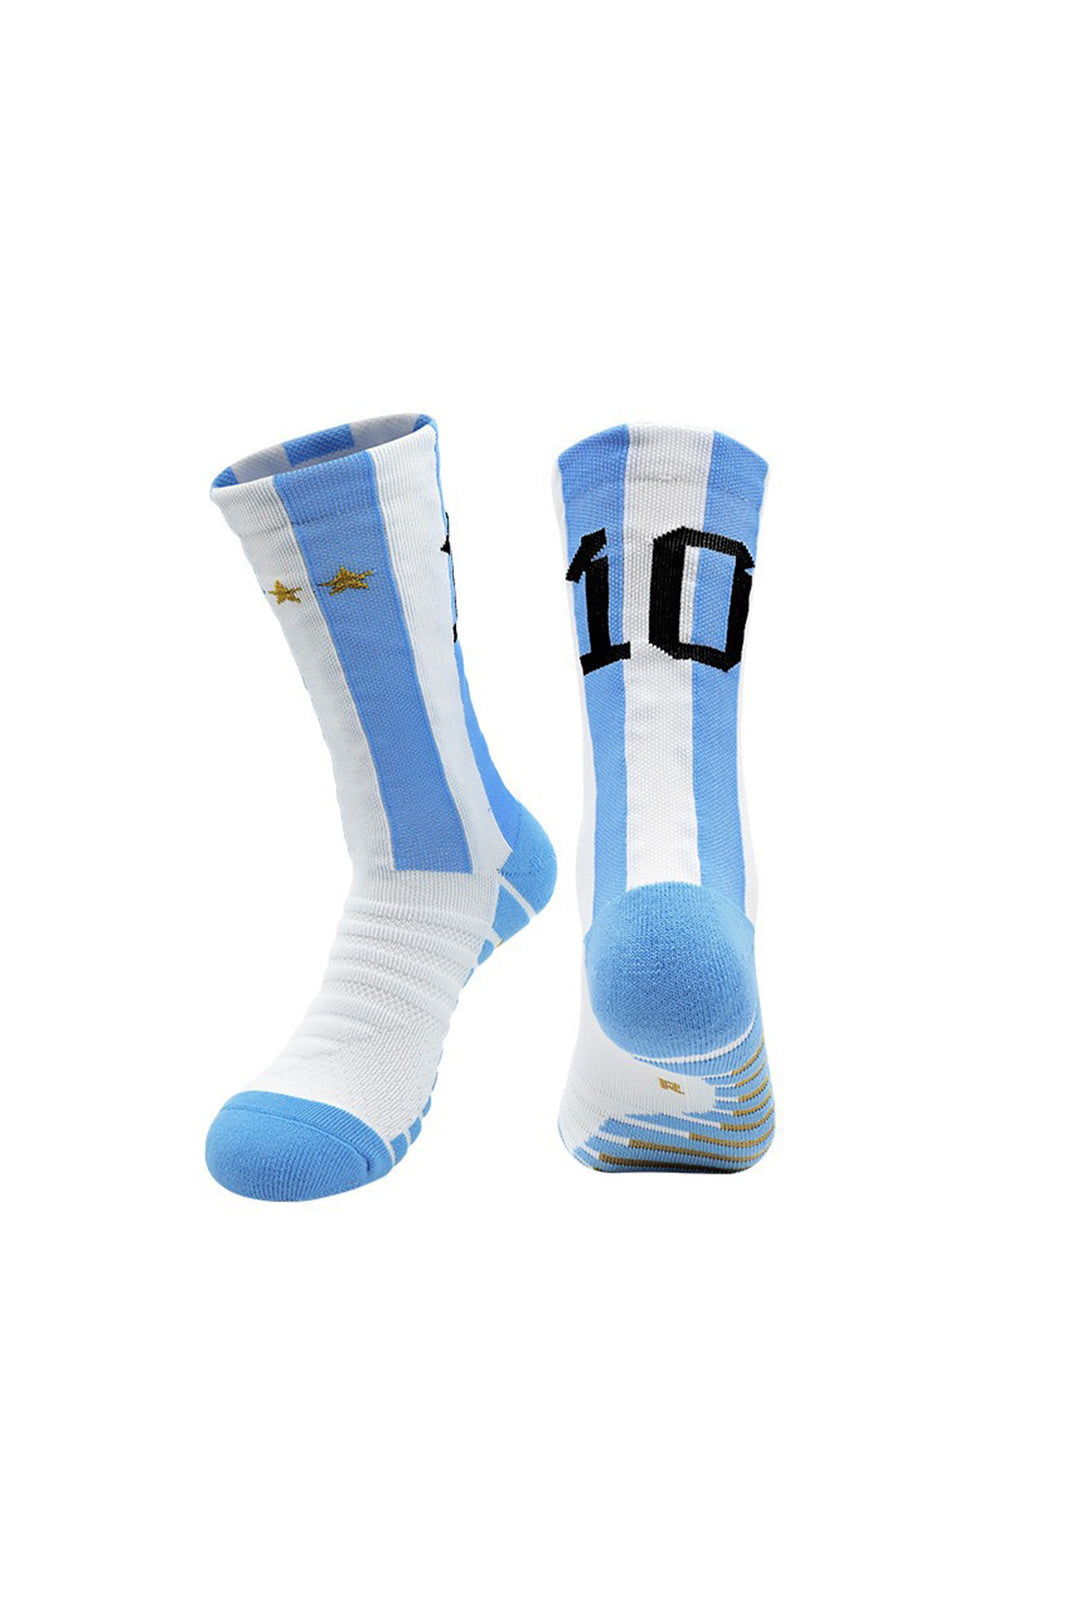 Number 10 Mid-Calf Socks